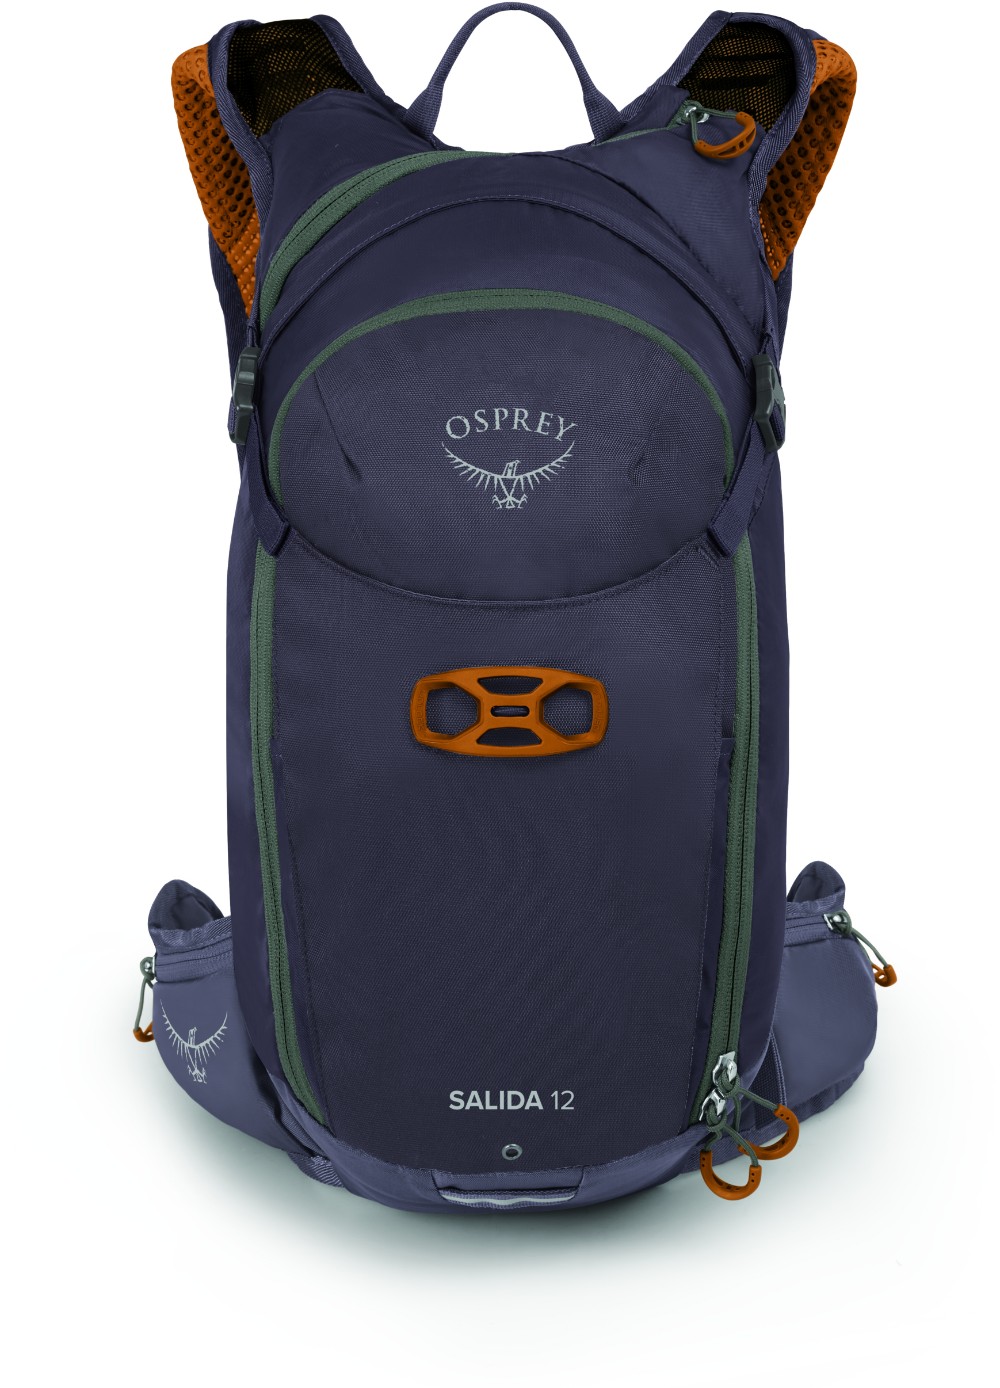 Salida 12 Backpack with 2.5L Reservoir image 2